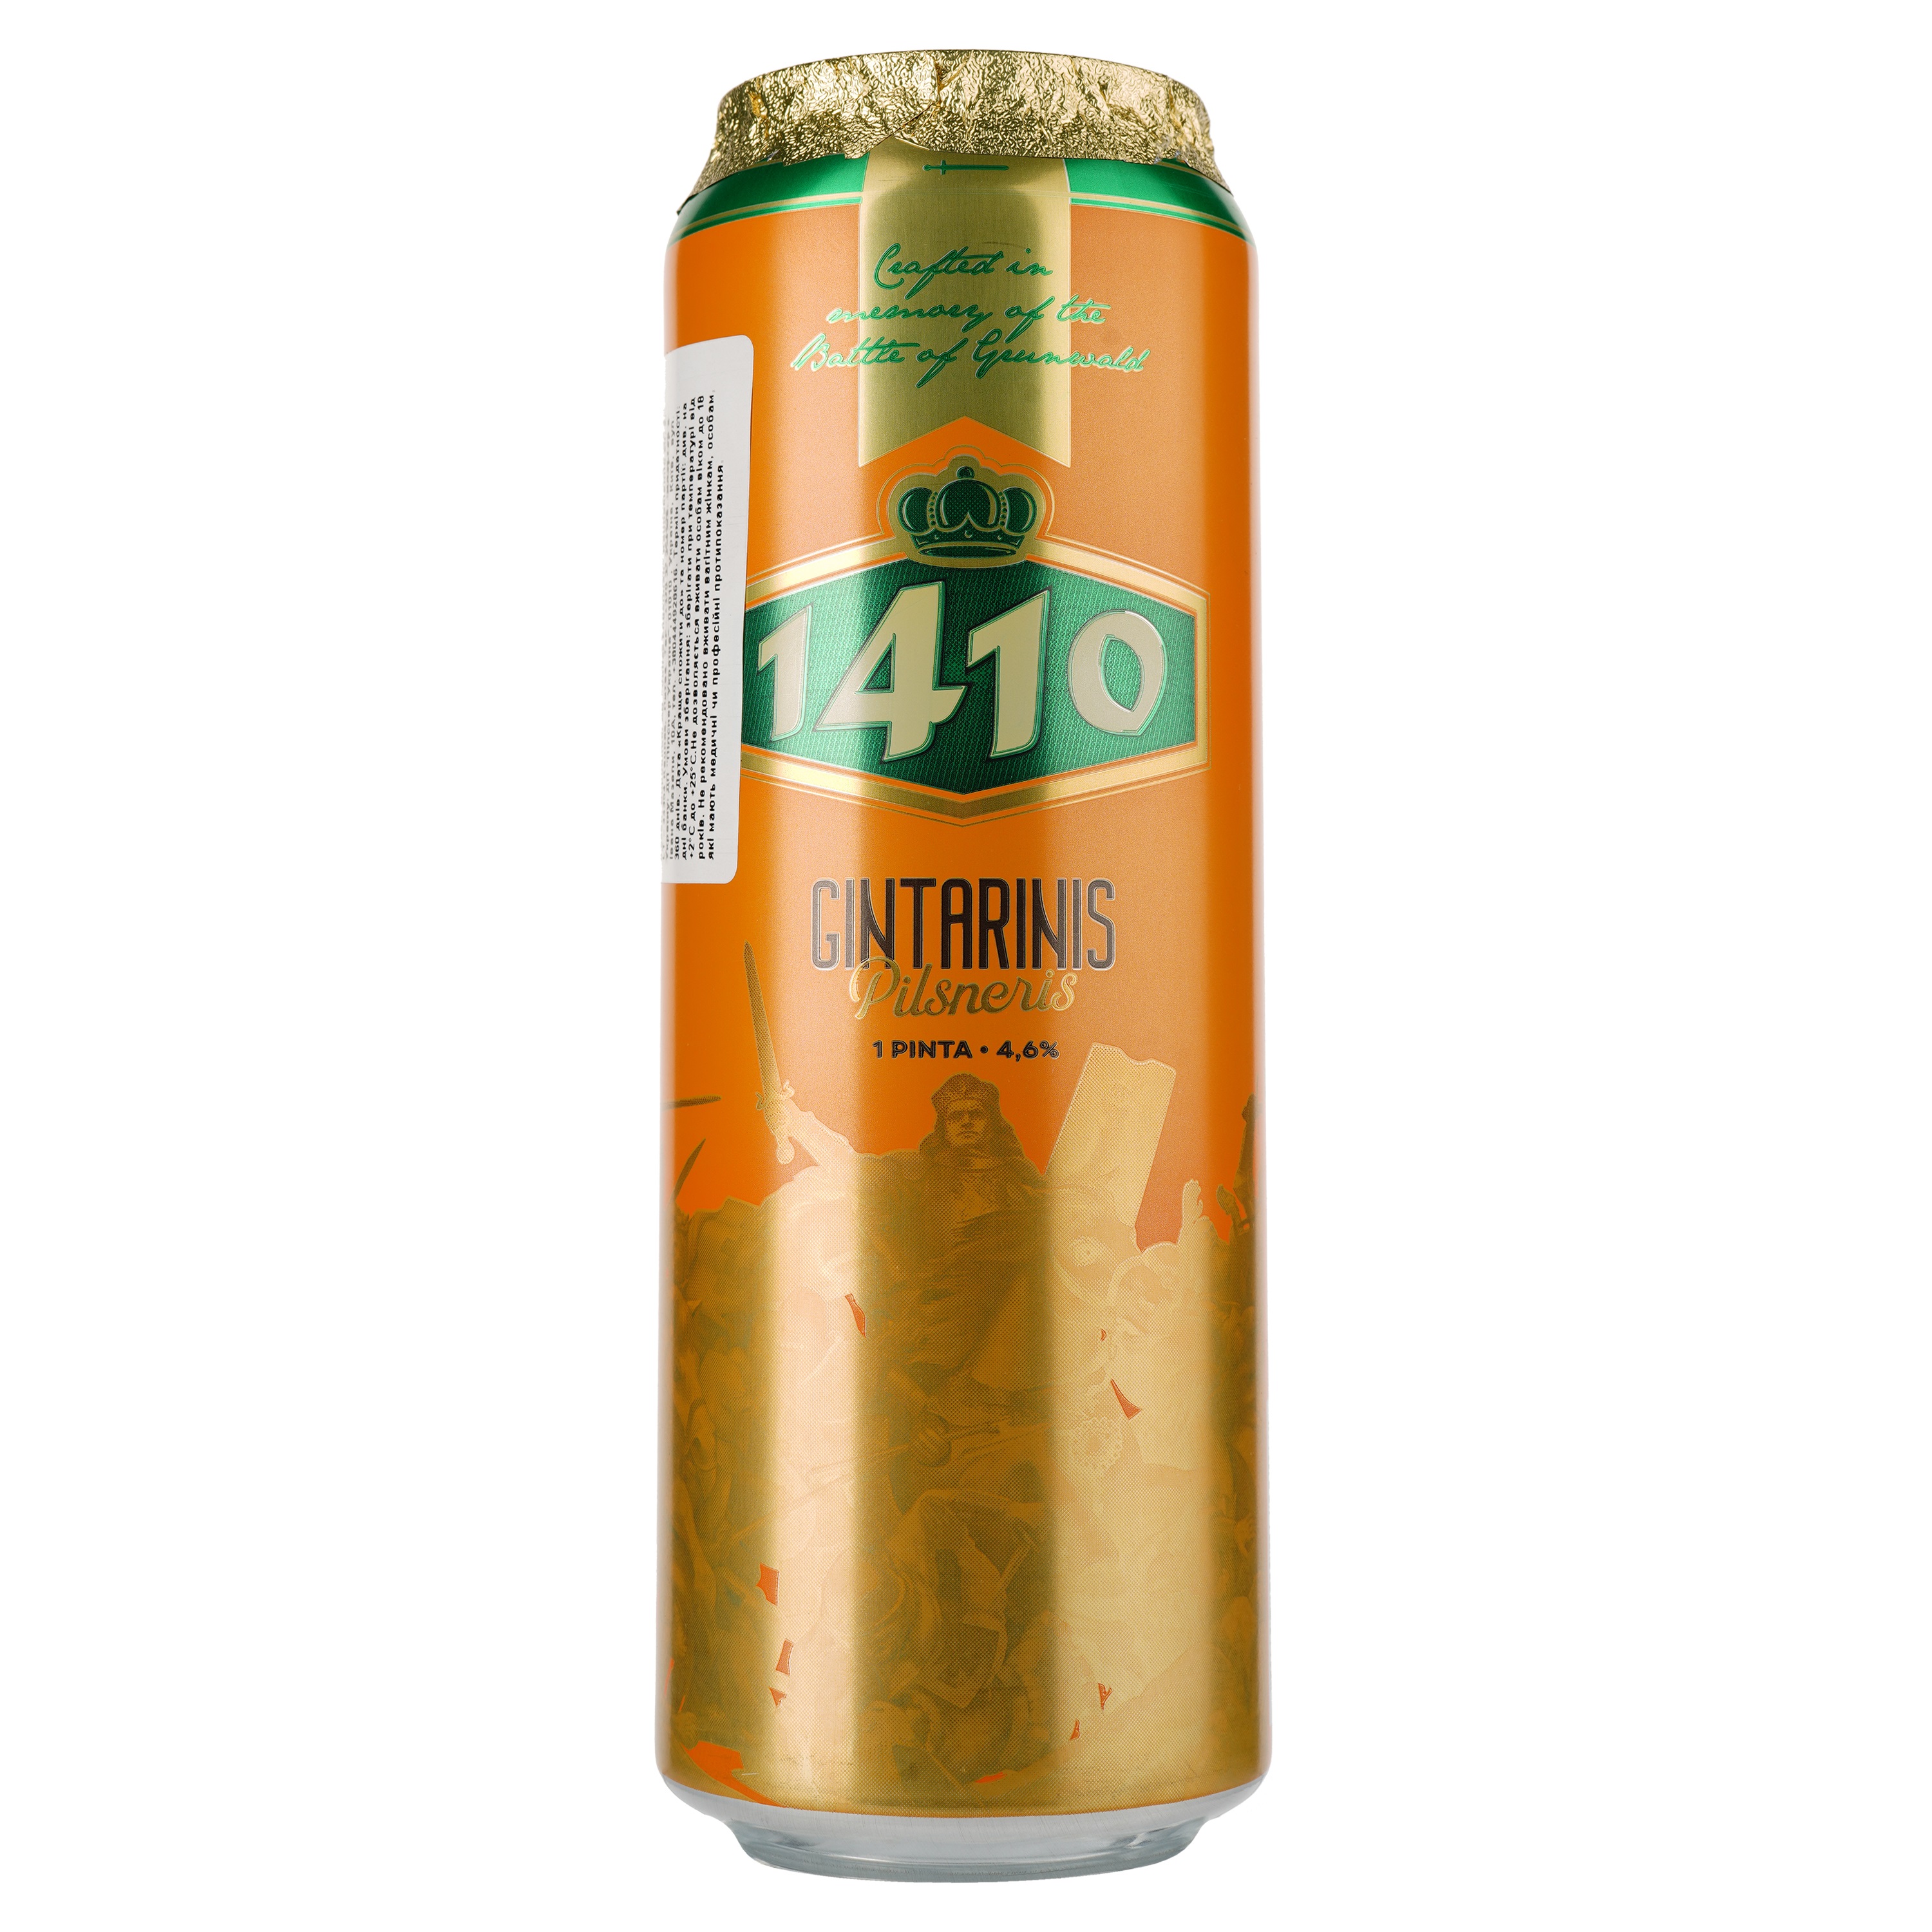 Пиво Volfas Engelman 1410 Amberis світле, 4.6%, з/б, 0.568 л - фото 1